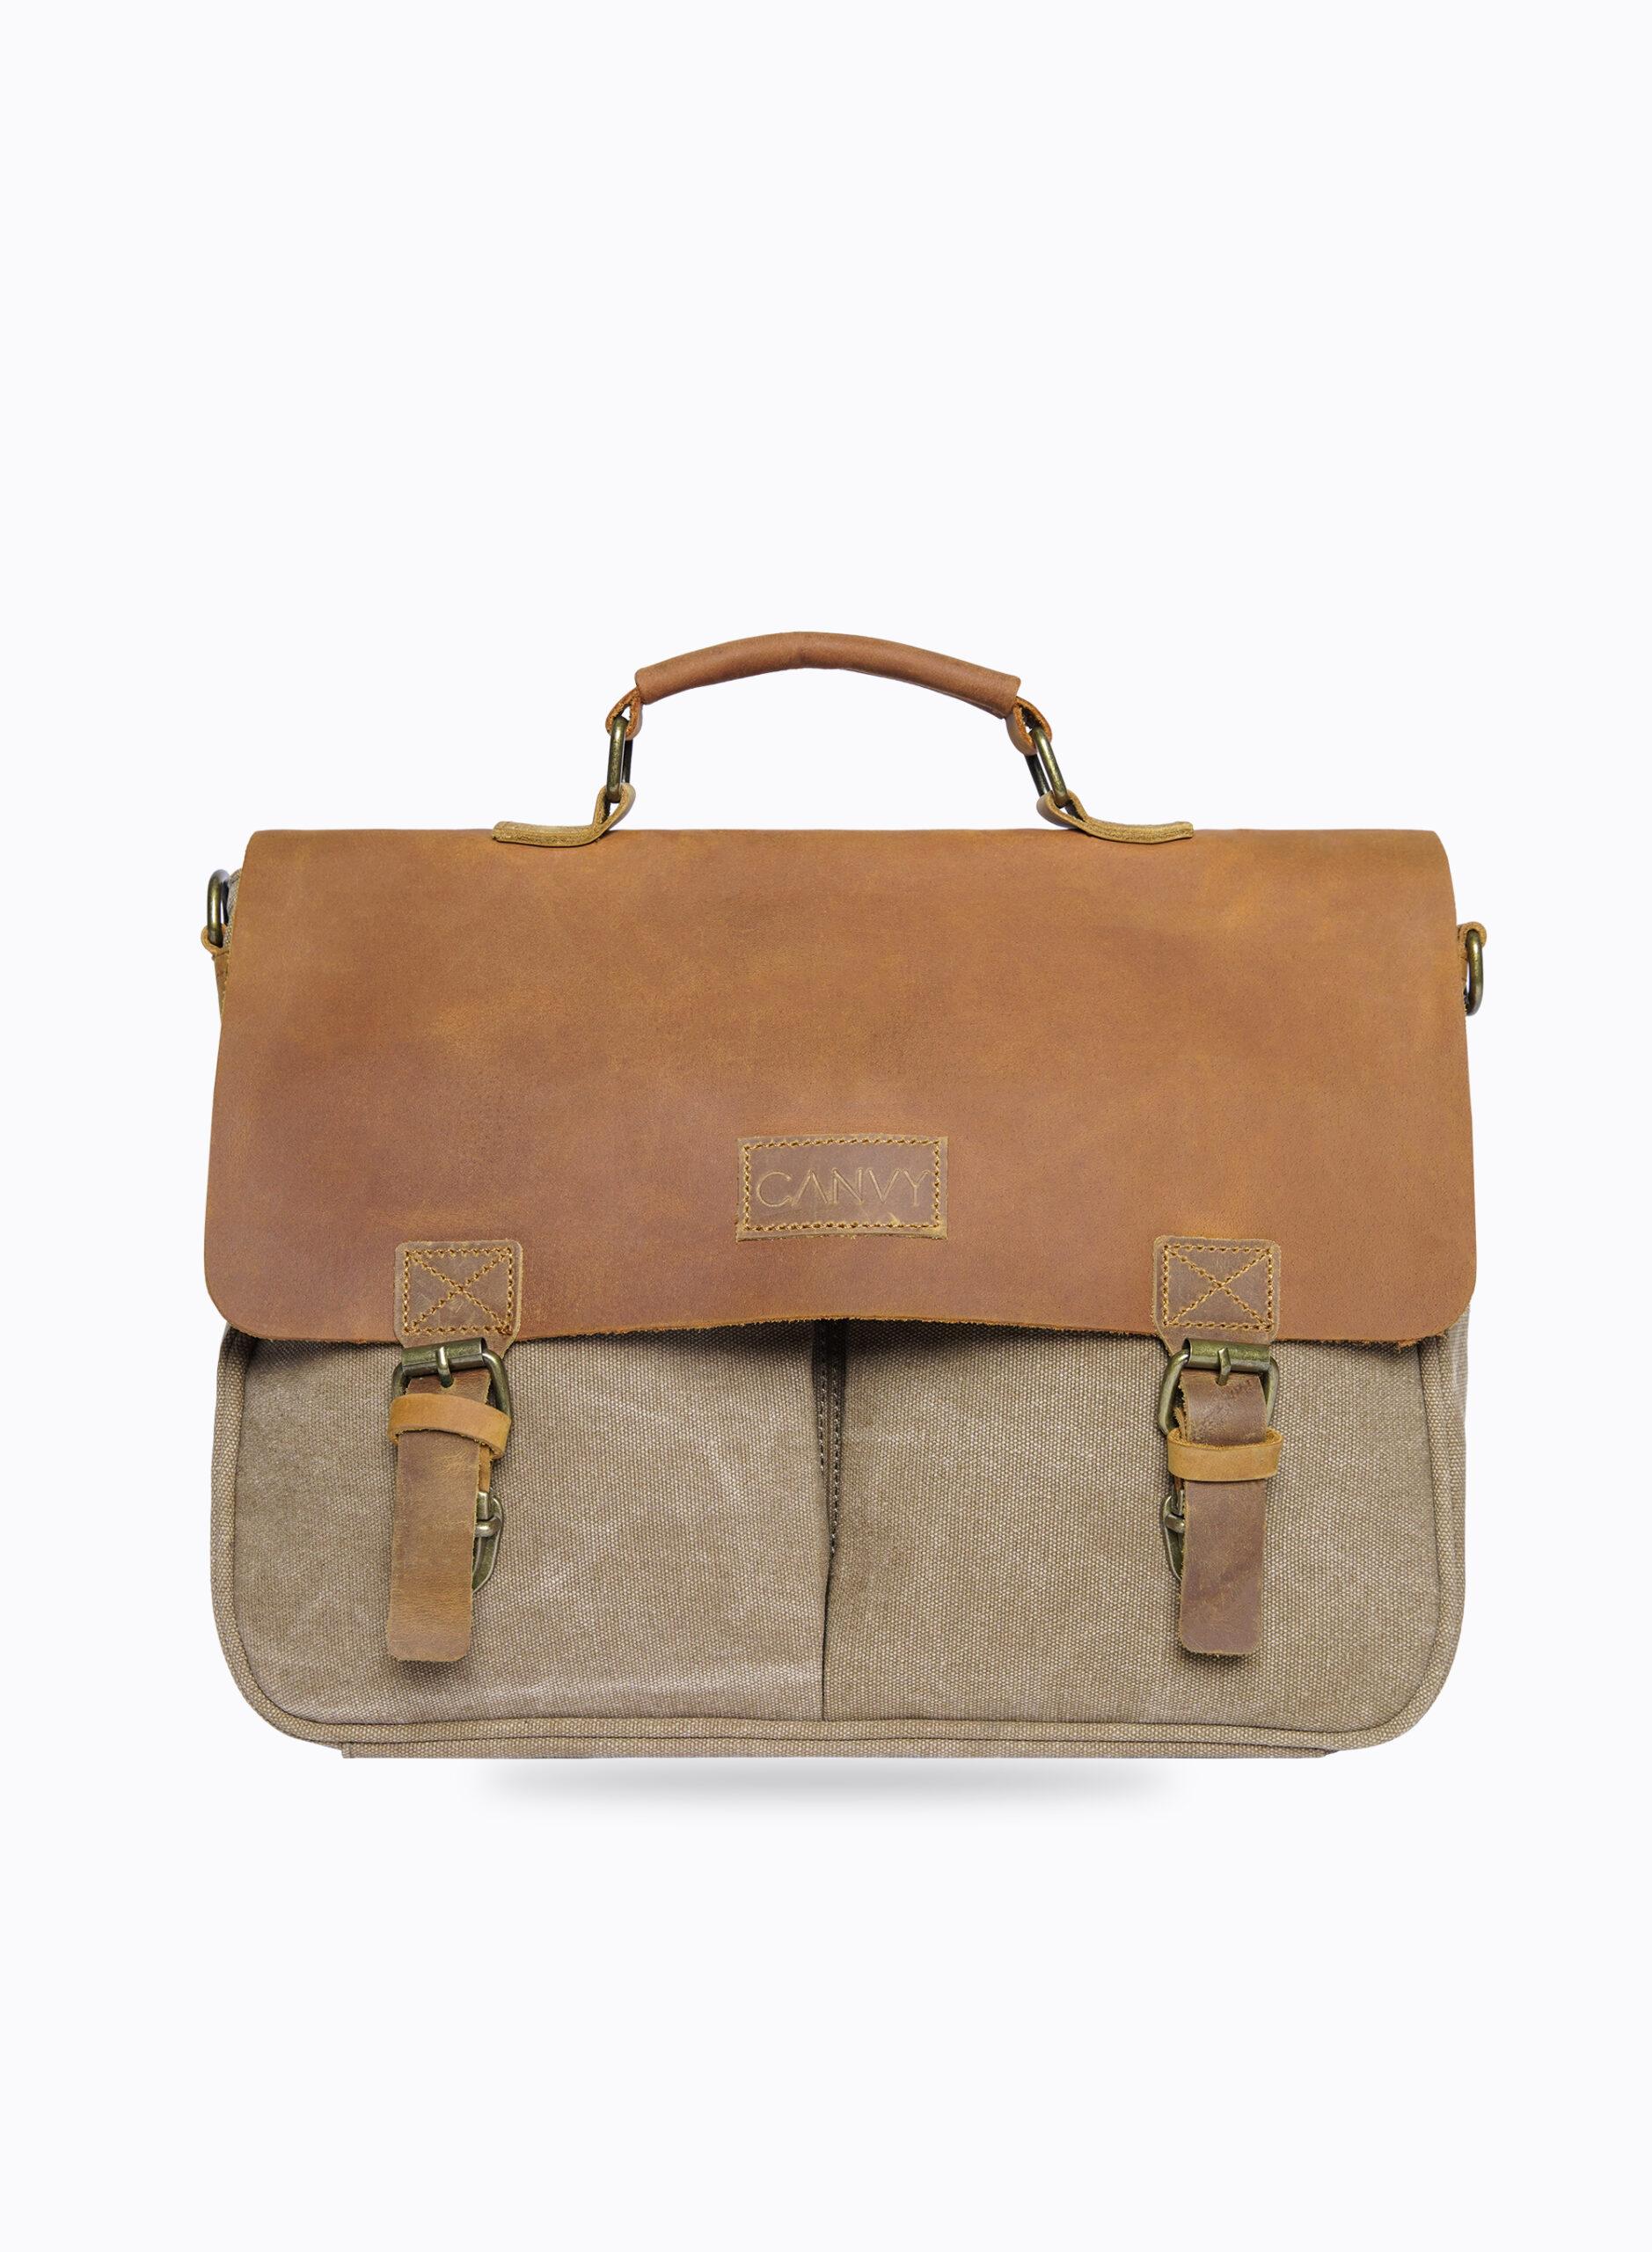 CANVY PARA JOHN Canvas Messenger Backpack - Laptop Messenger Bags, Shoulder Backpack Handbag - Multipurpose Business Briefcase Vintage Travel Backpack - 13.3 Inch-KHAKI